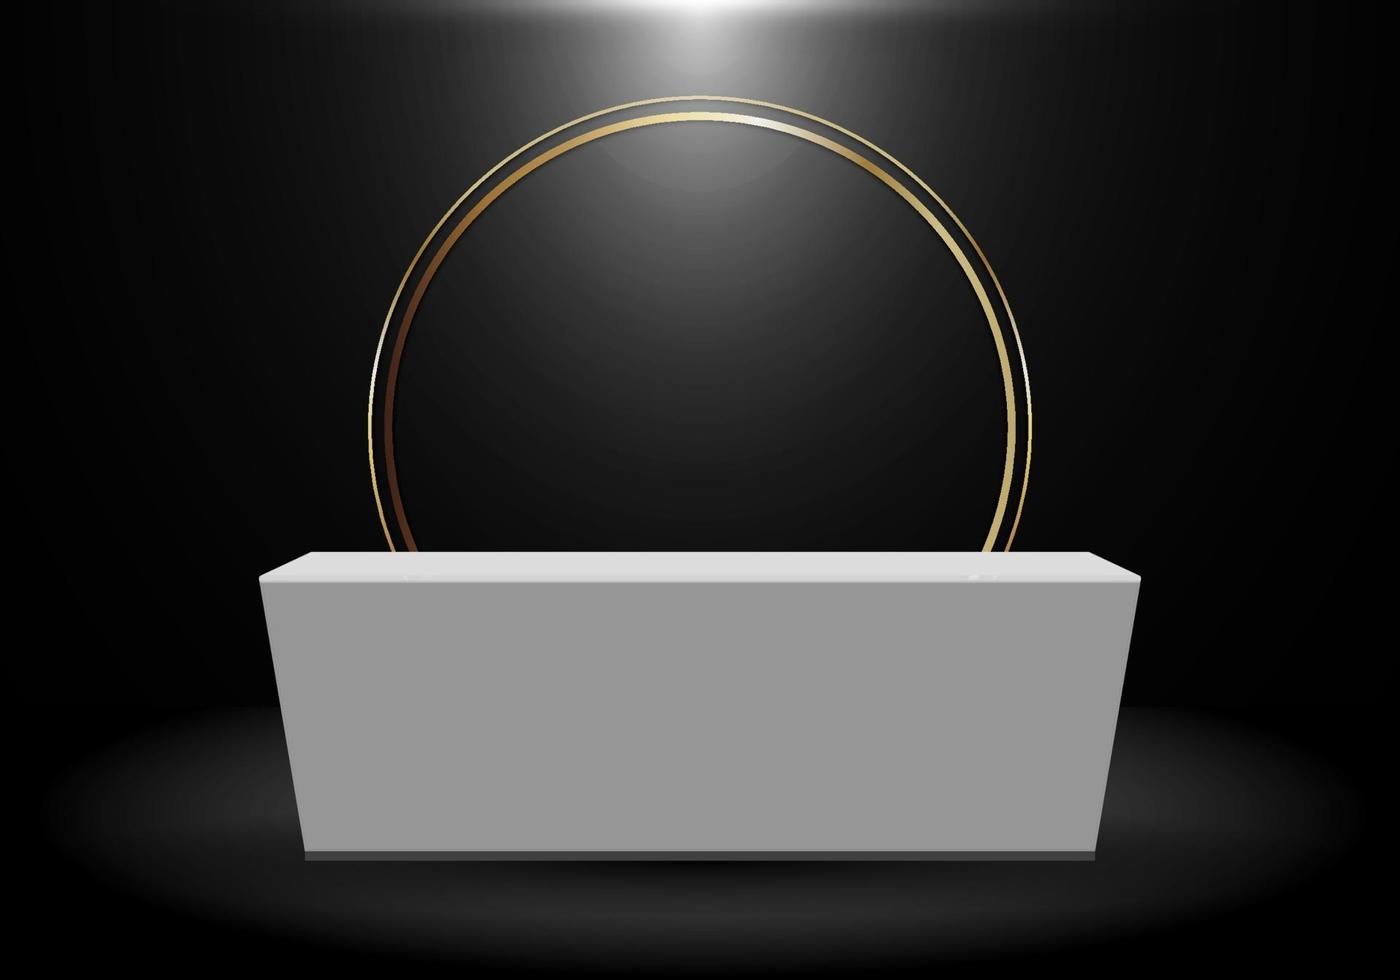 3D-Rendering realistischer schwarzer Produktregal stehender Hintergrund mit Goldkreis leer leere weiße Sockelpodestanzeige auf dunklem Hintergrund vektor